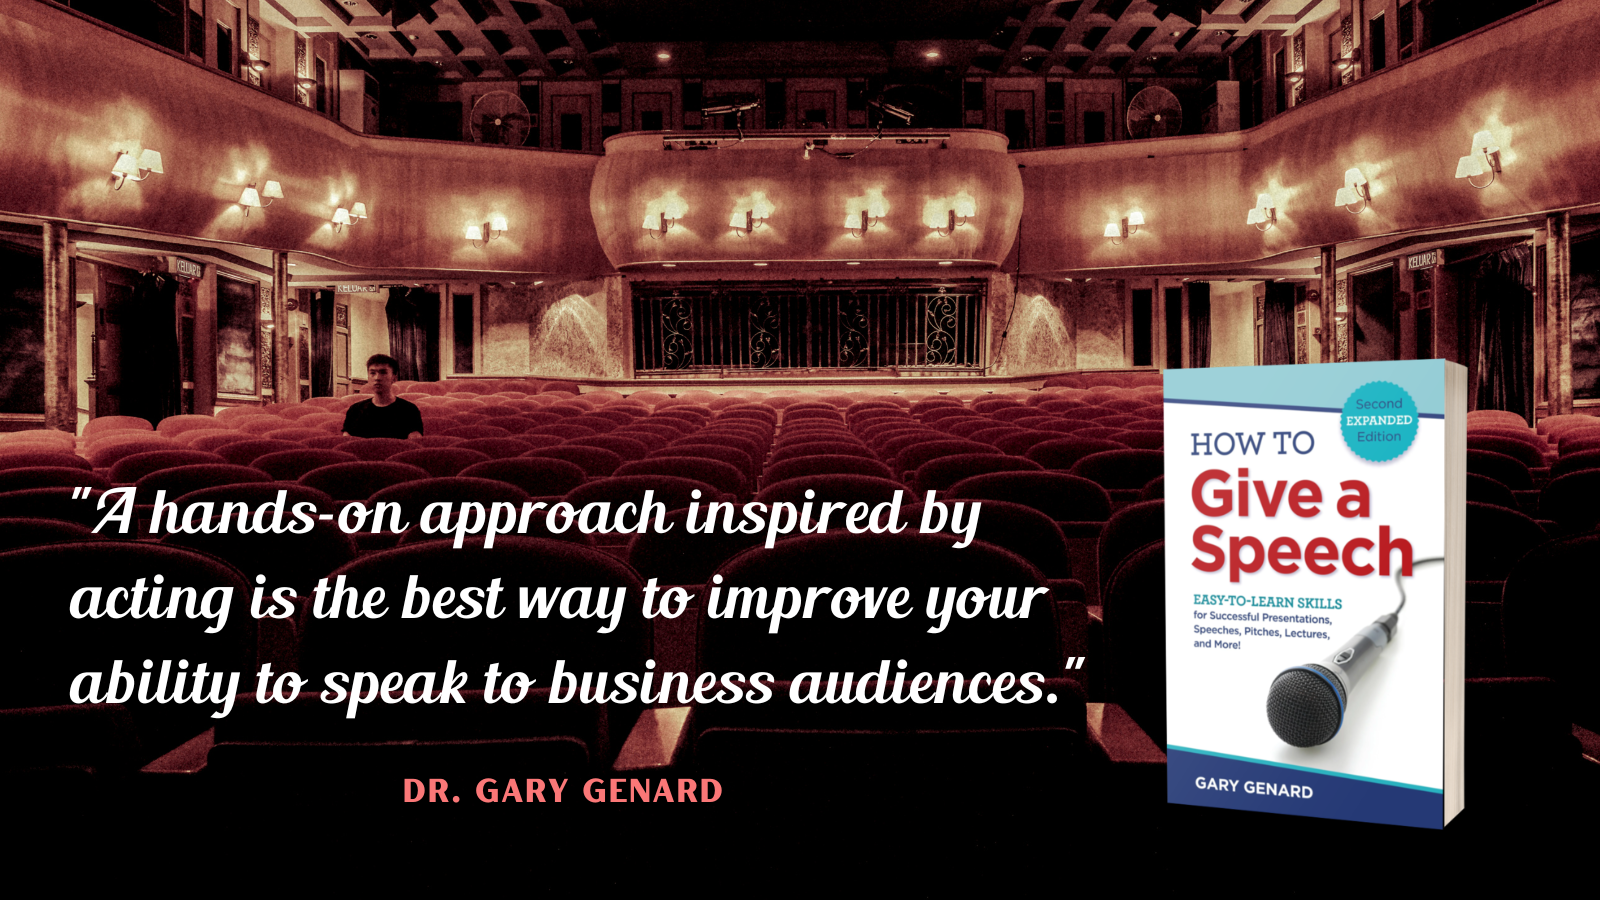 Dr. Gary Genard's public speaking handbook, How To Give A Speech.